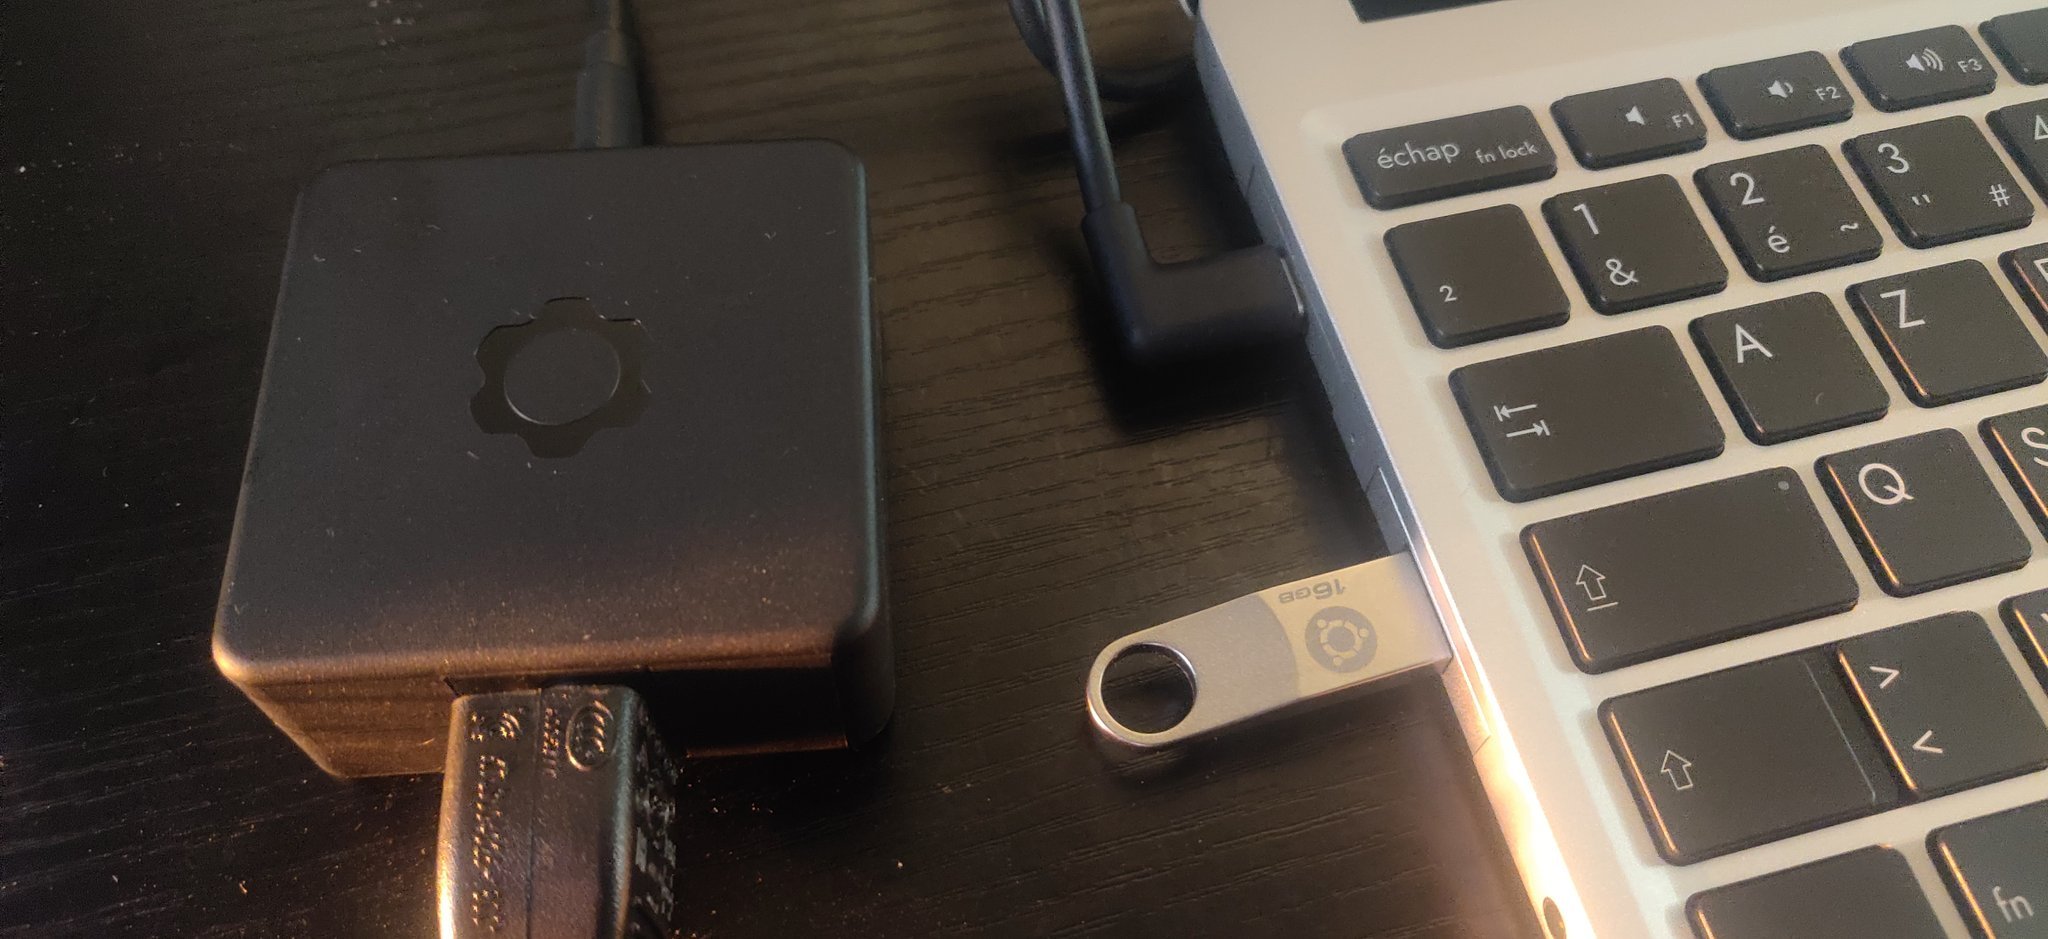 Une clef siglée Ubuntu dans un port USB A de l’ordinateur. À côté, le bloc d’alimentation, portant lui le logo de Frame.work.